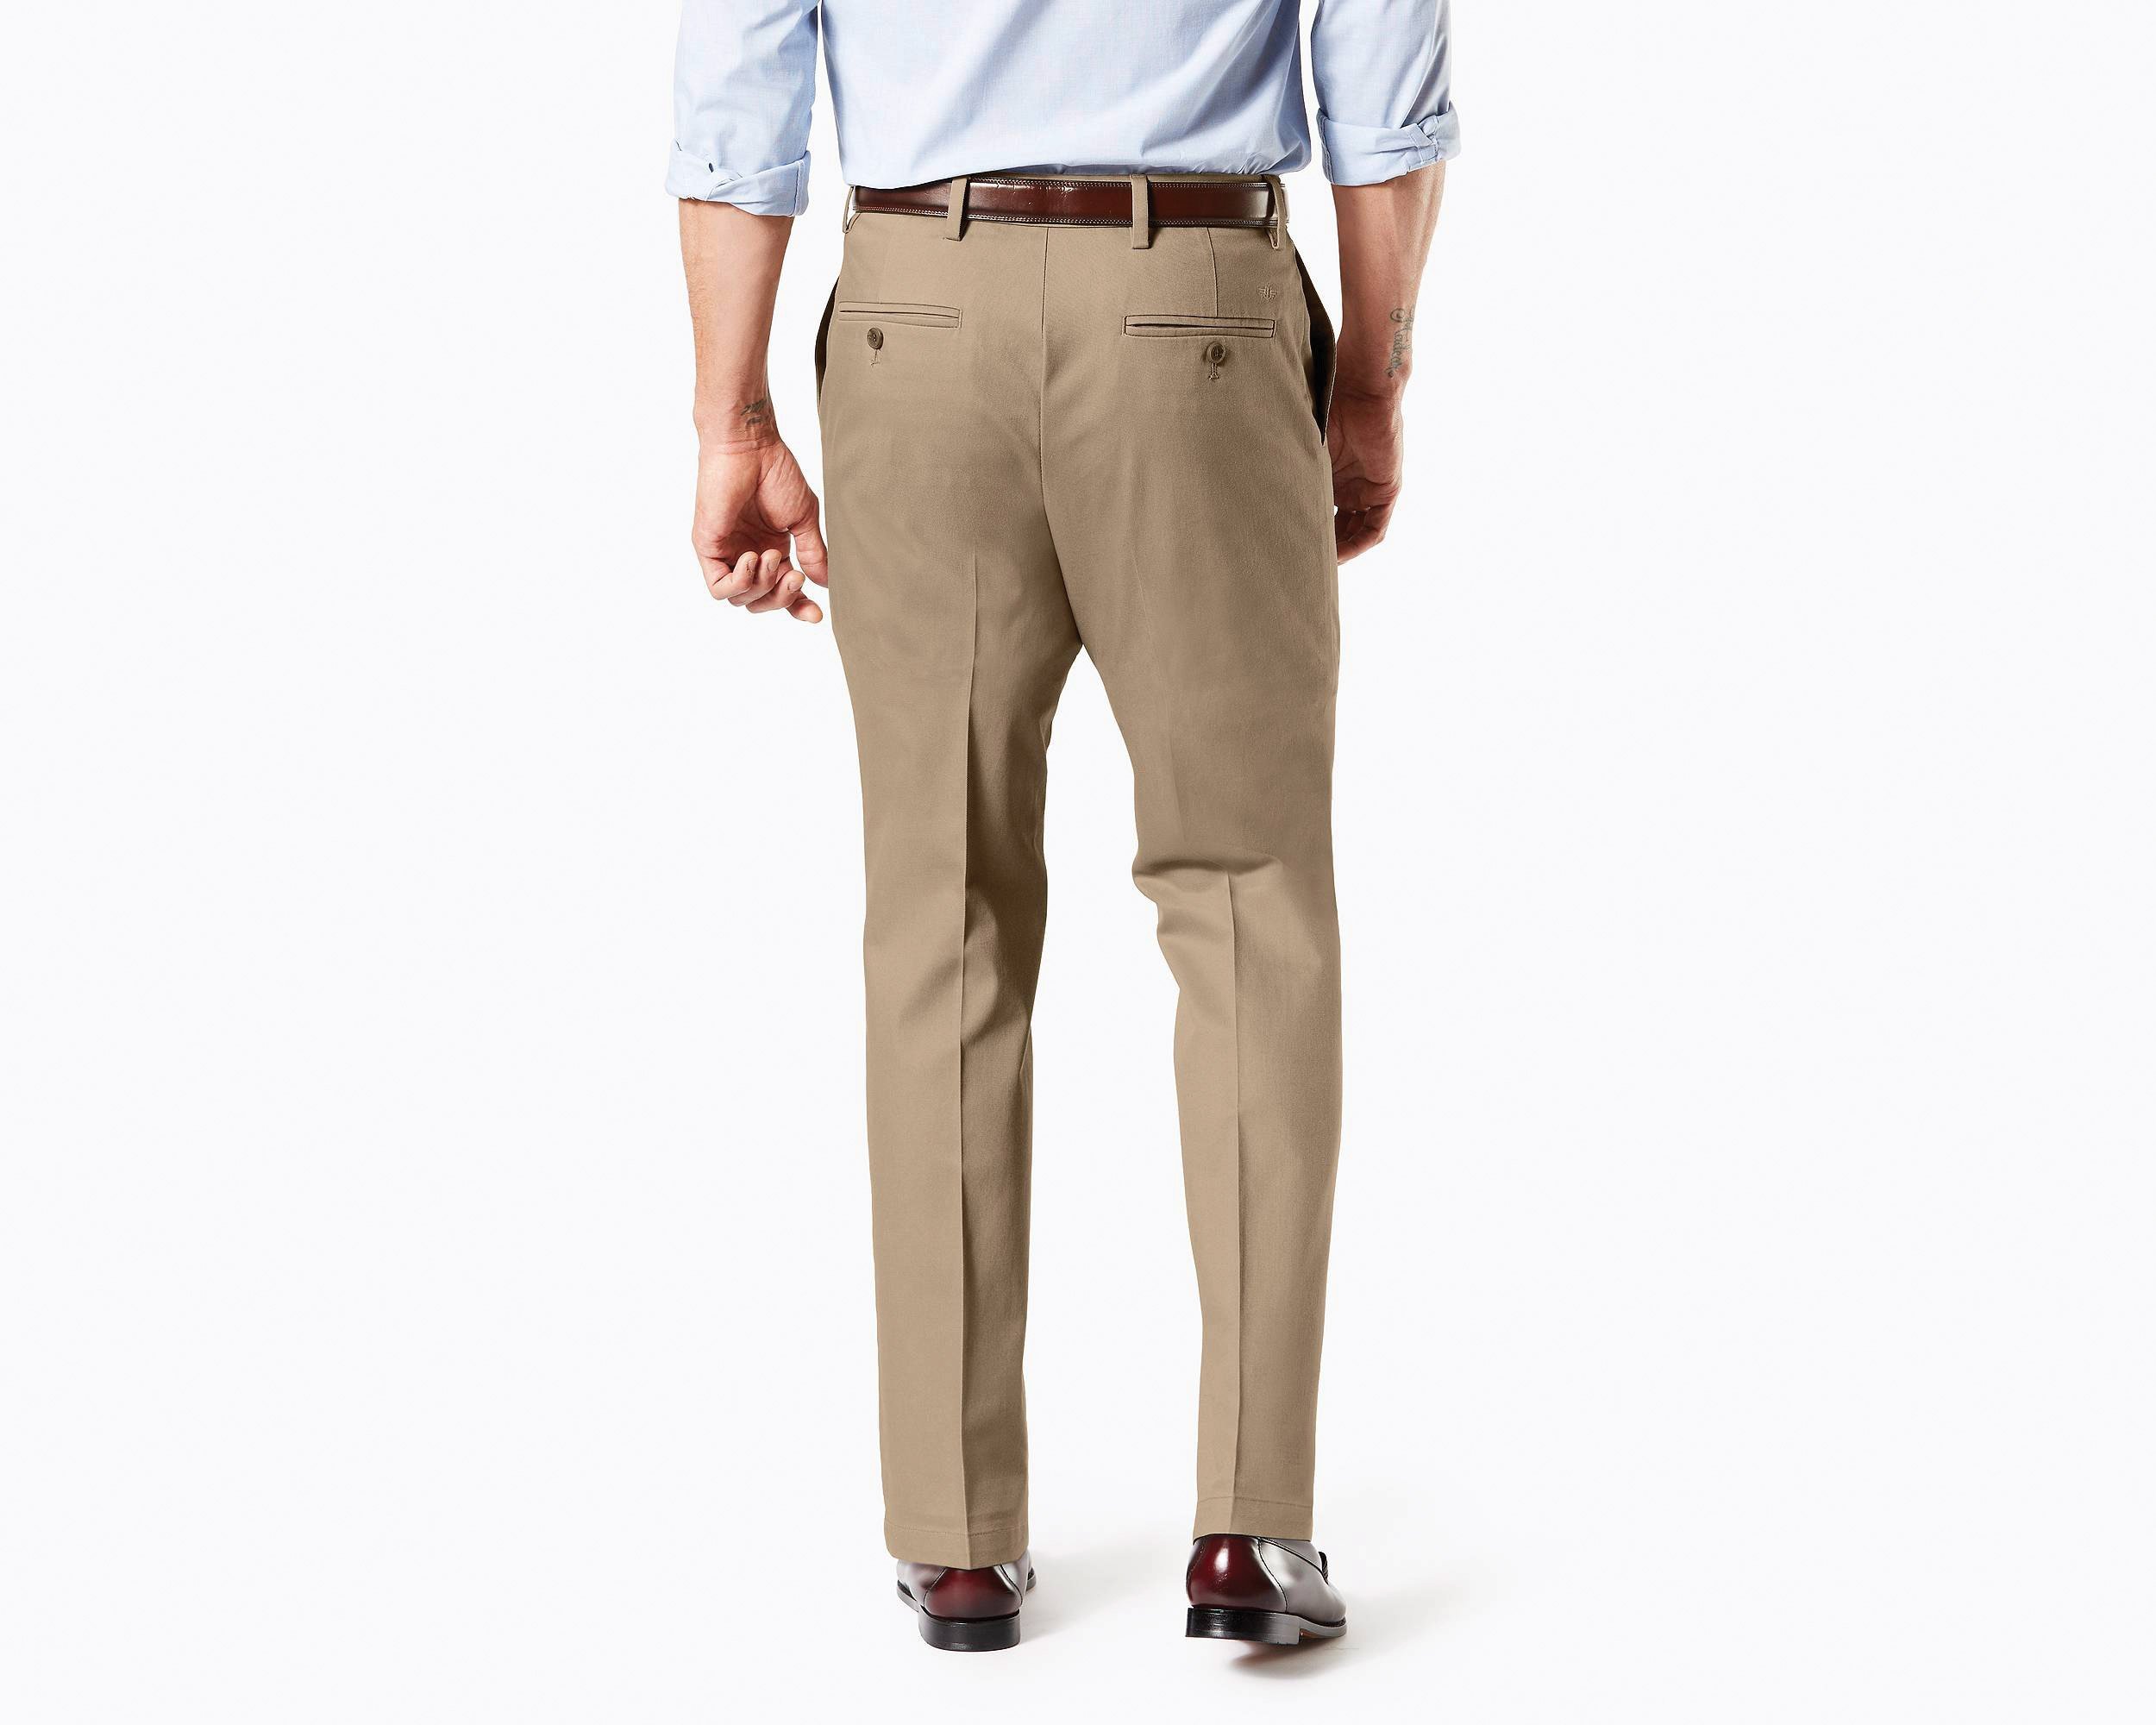 Pantalón Básico de Vestir Café Claro Straight Dockers para Caballero